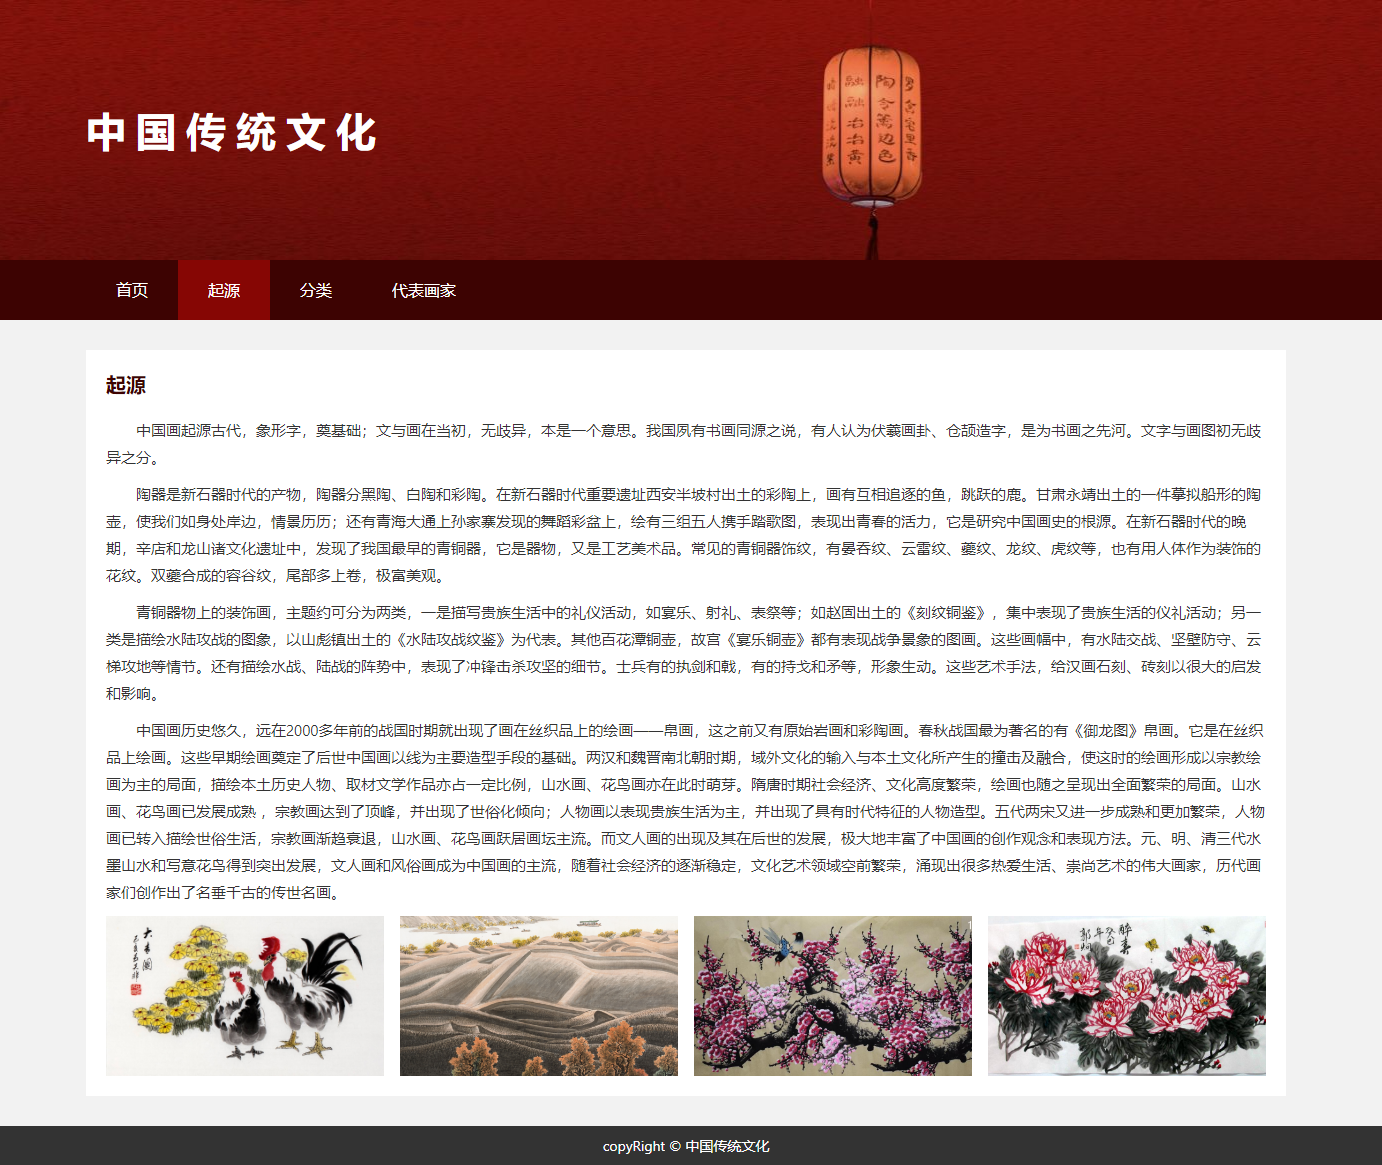 【html+css】中国传统文化主题网页-国画